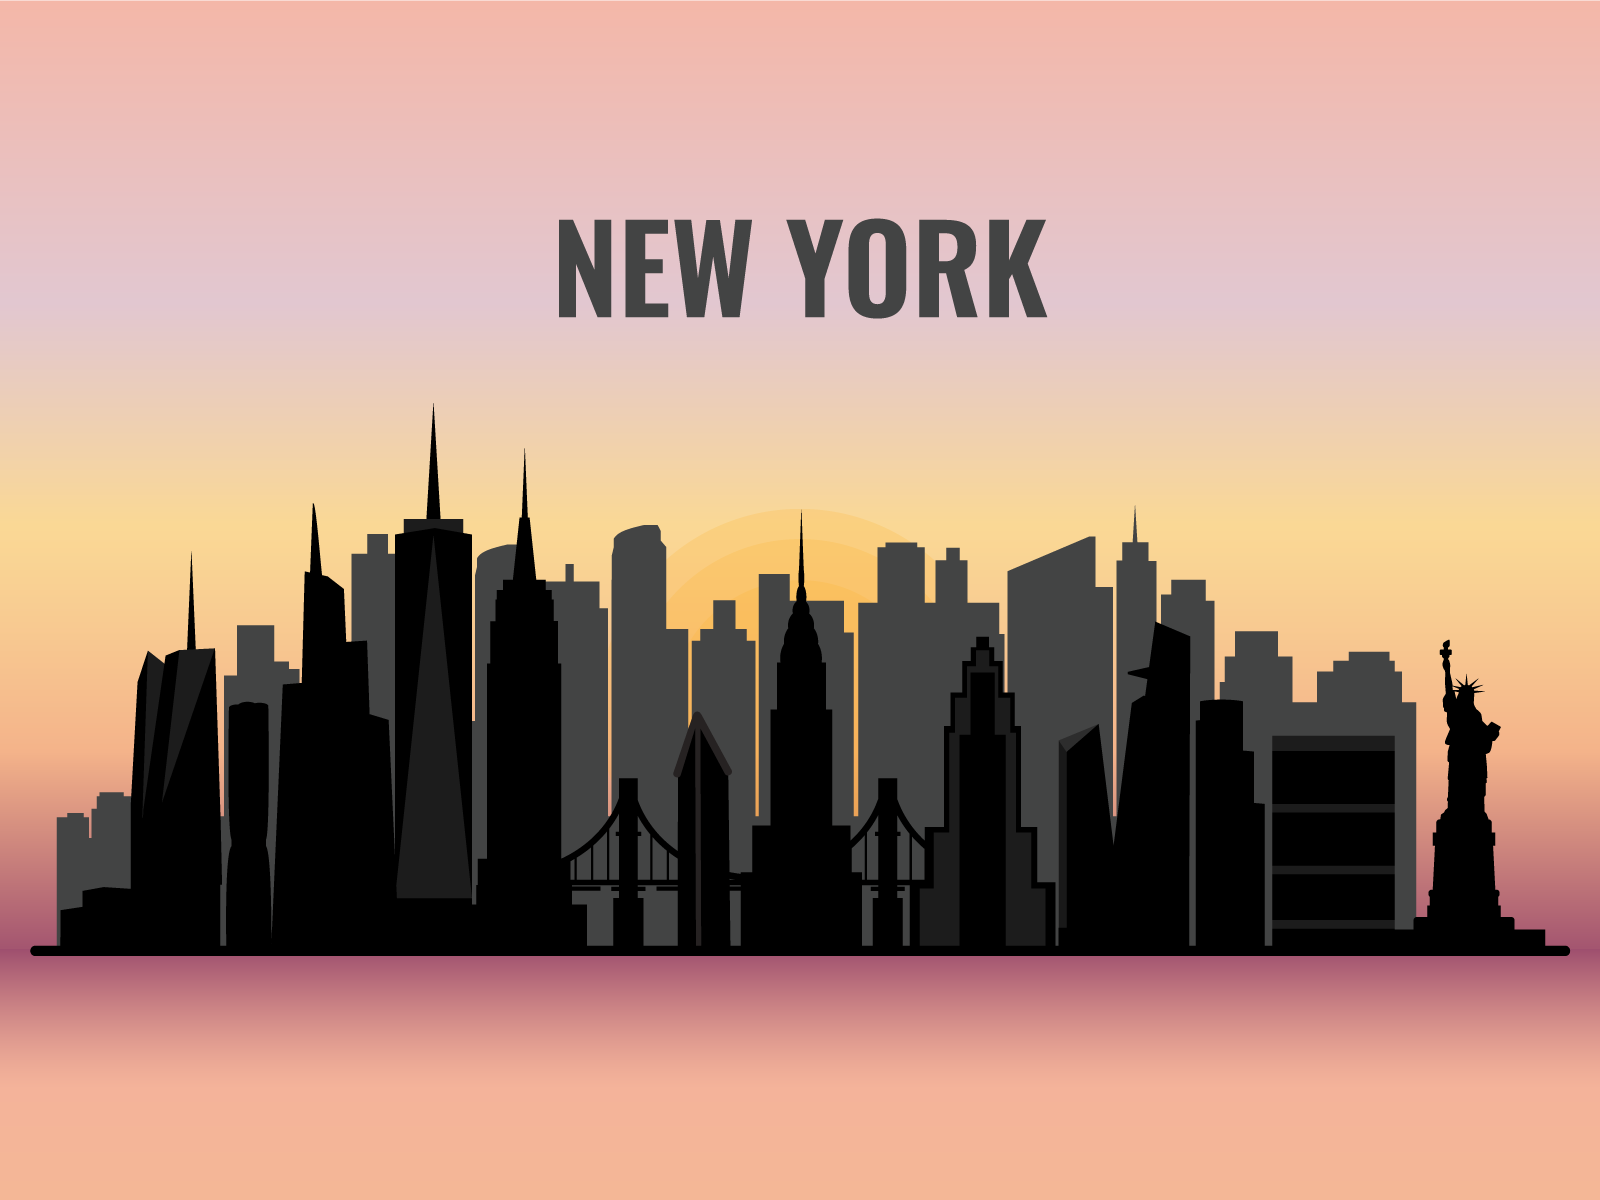 New York City skyline by Elena Barskaya on Dribbble